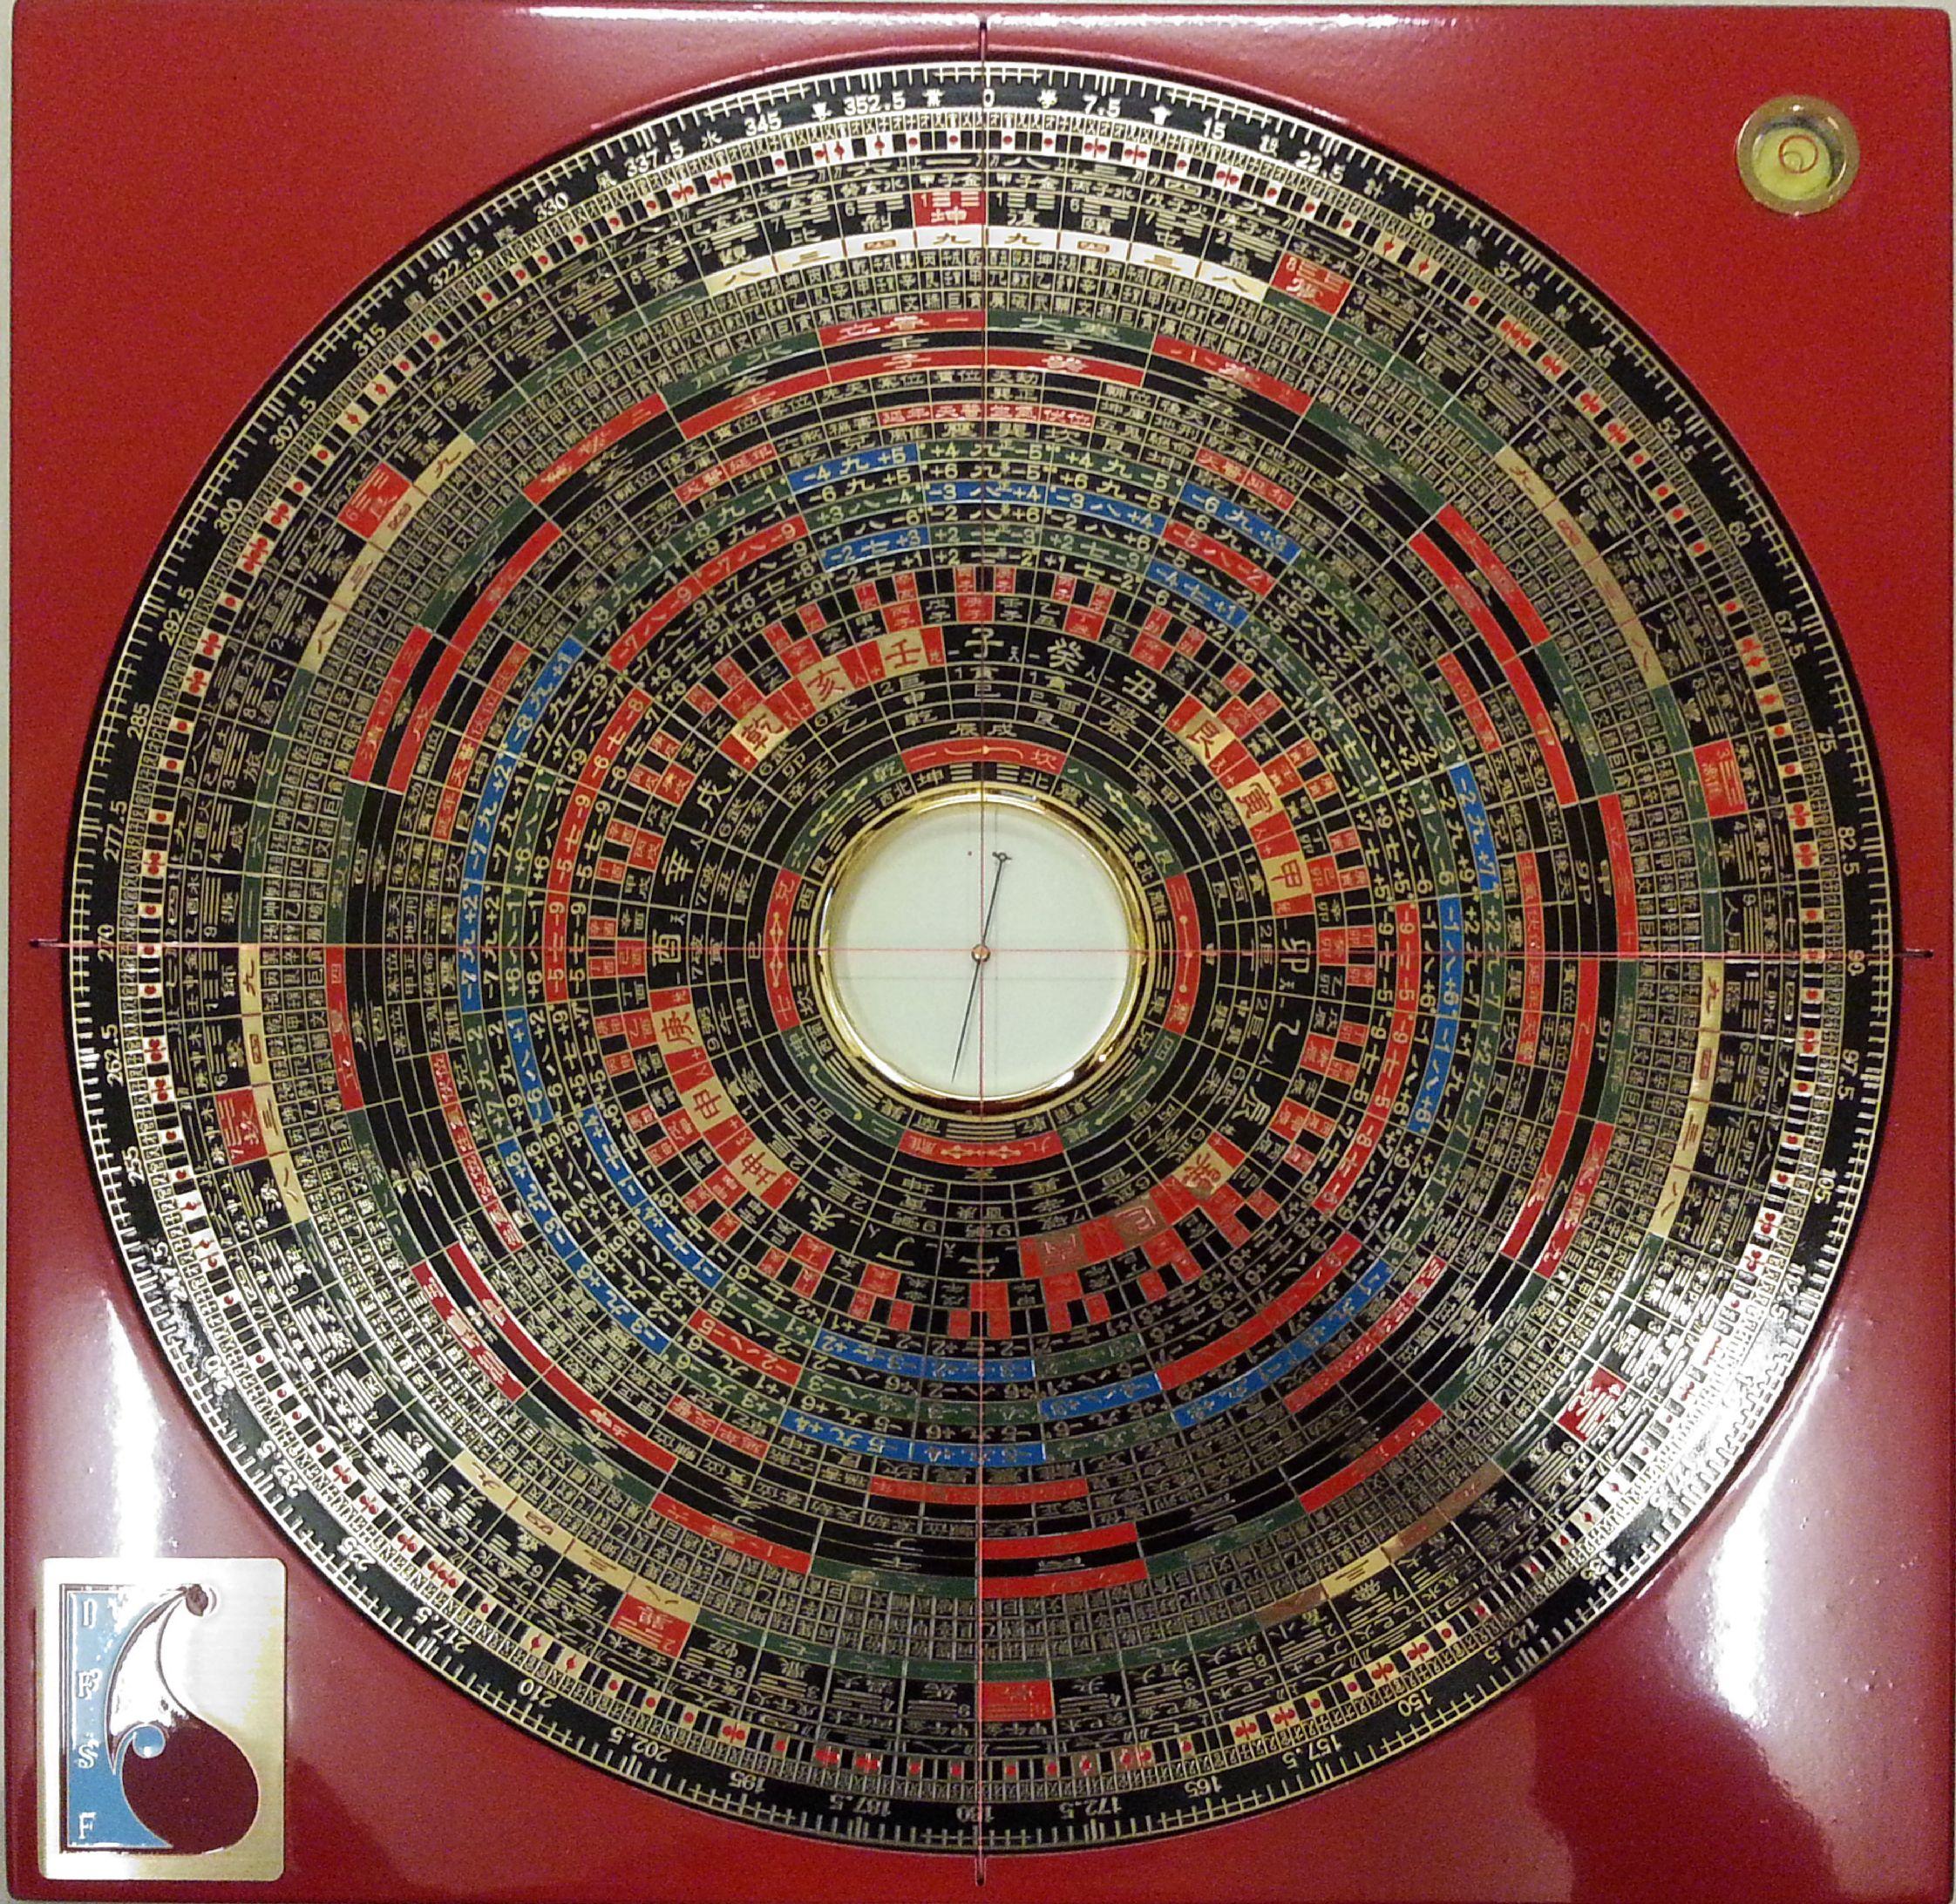 綜合三元三合特大精要風水羅盤 12 吋 (玄空七、八、九運正盤、兼盤及城門水法) Feng Shui Compass